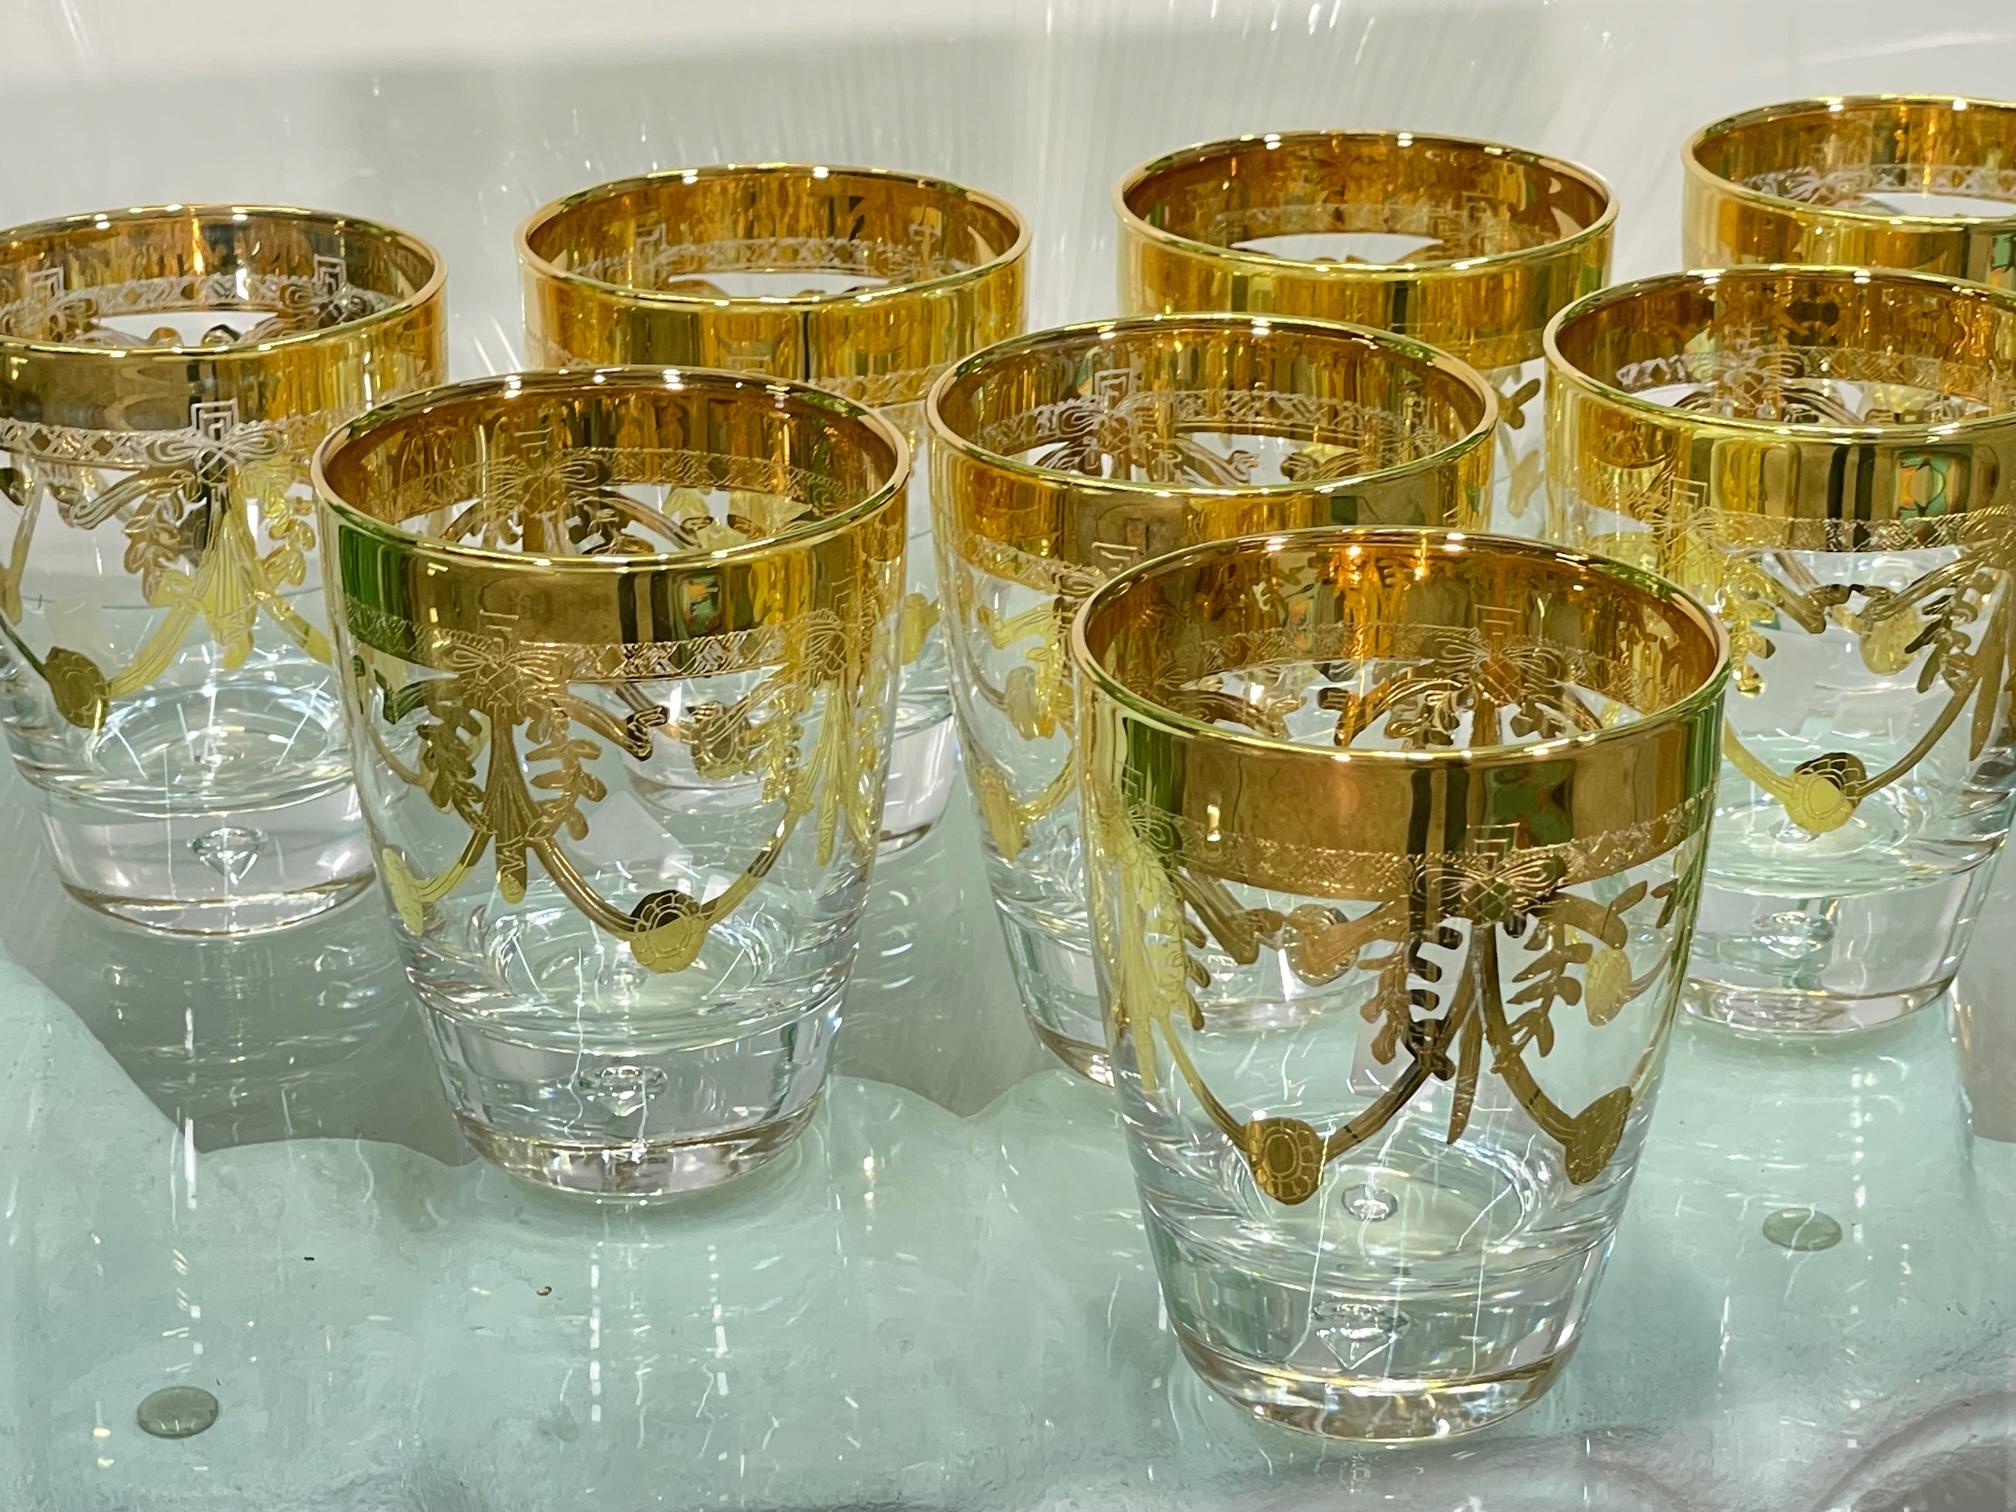 Le set de 8 verres à bar de Creart présente des détails en feuilles d'or et une base lourde avec une bulle en forme de diamant à l'intérieur. Fabriquées en Italie. Dans un état comme neuf. 
Pour un devis d'expédition vers votre code postal exact,